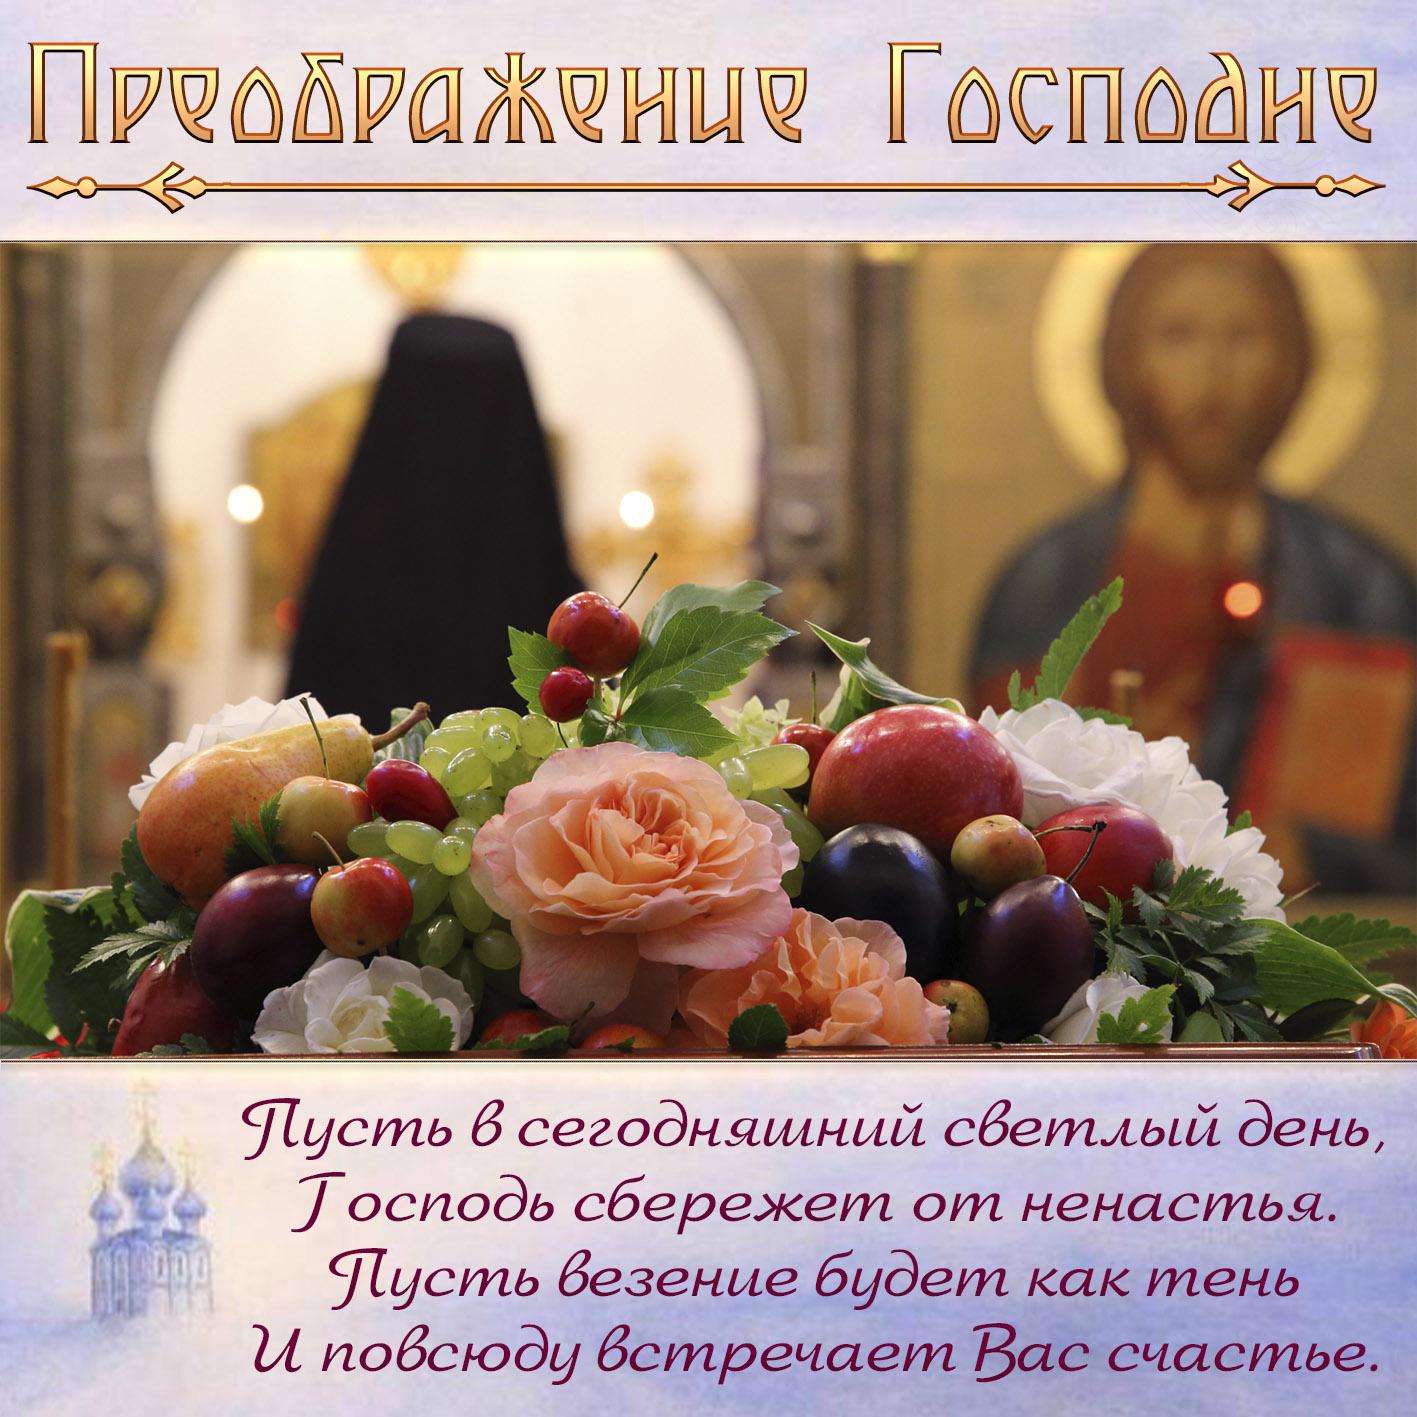 Фото Преображение Господне 19 августа 2022: лучшие новые открытки к празднику для православных 16